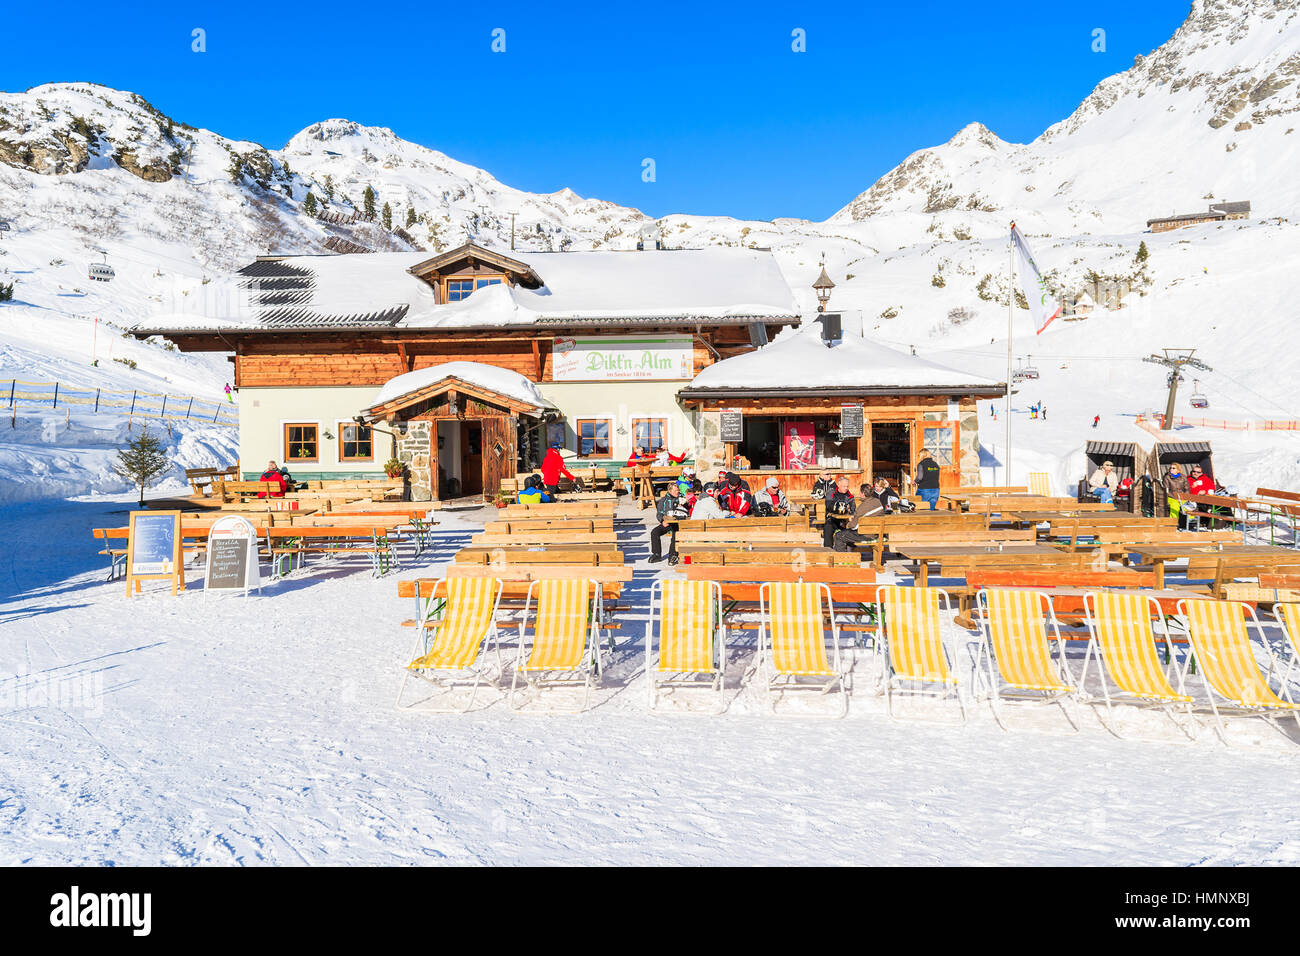 OBERTAUERN SKI RESORT, Austria - Jan 22, 2017: sdraio del rifugio di montagna a Obertauern ski area nel Land di Salisburgo, Alpi austriache. Foto Stock